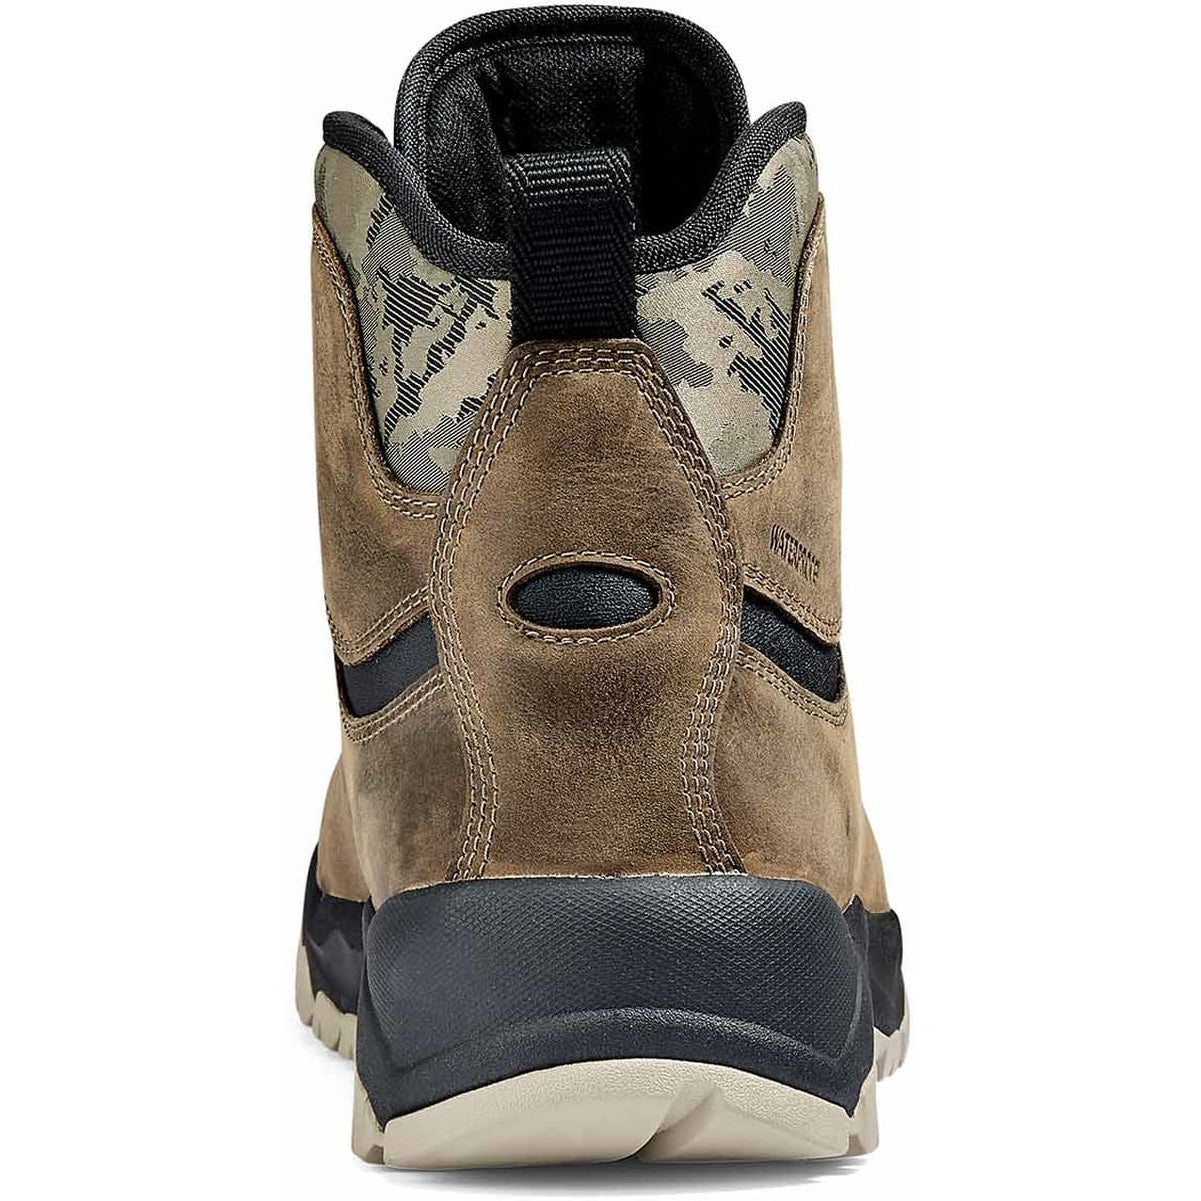 Kodiak Men's Comox Soft Toe Waterproof Lace Up Outdoor Boot -Fossil- 4TE2FS  - Overlook Boots